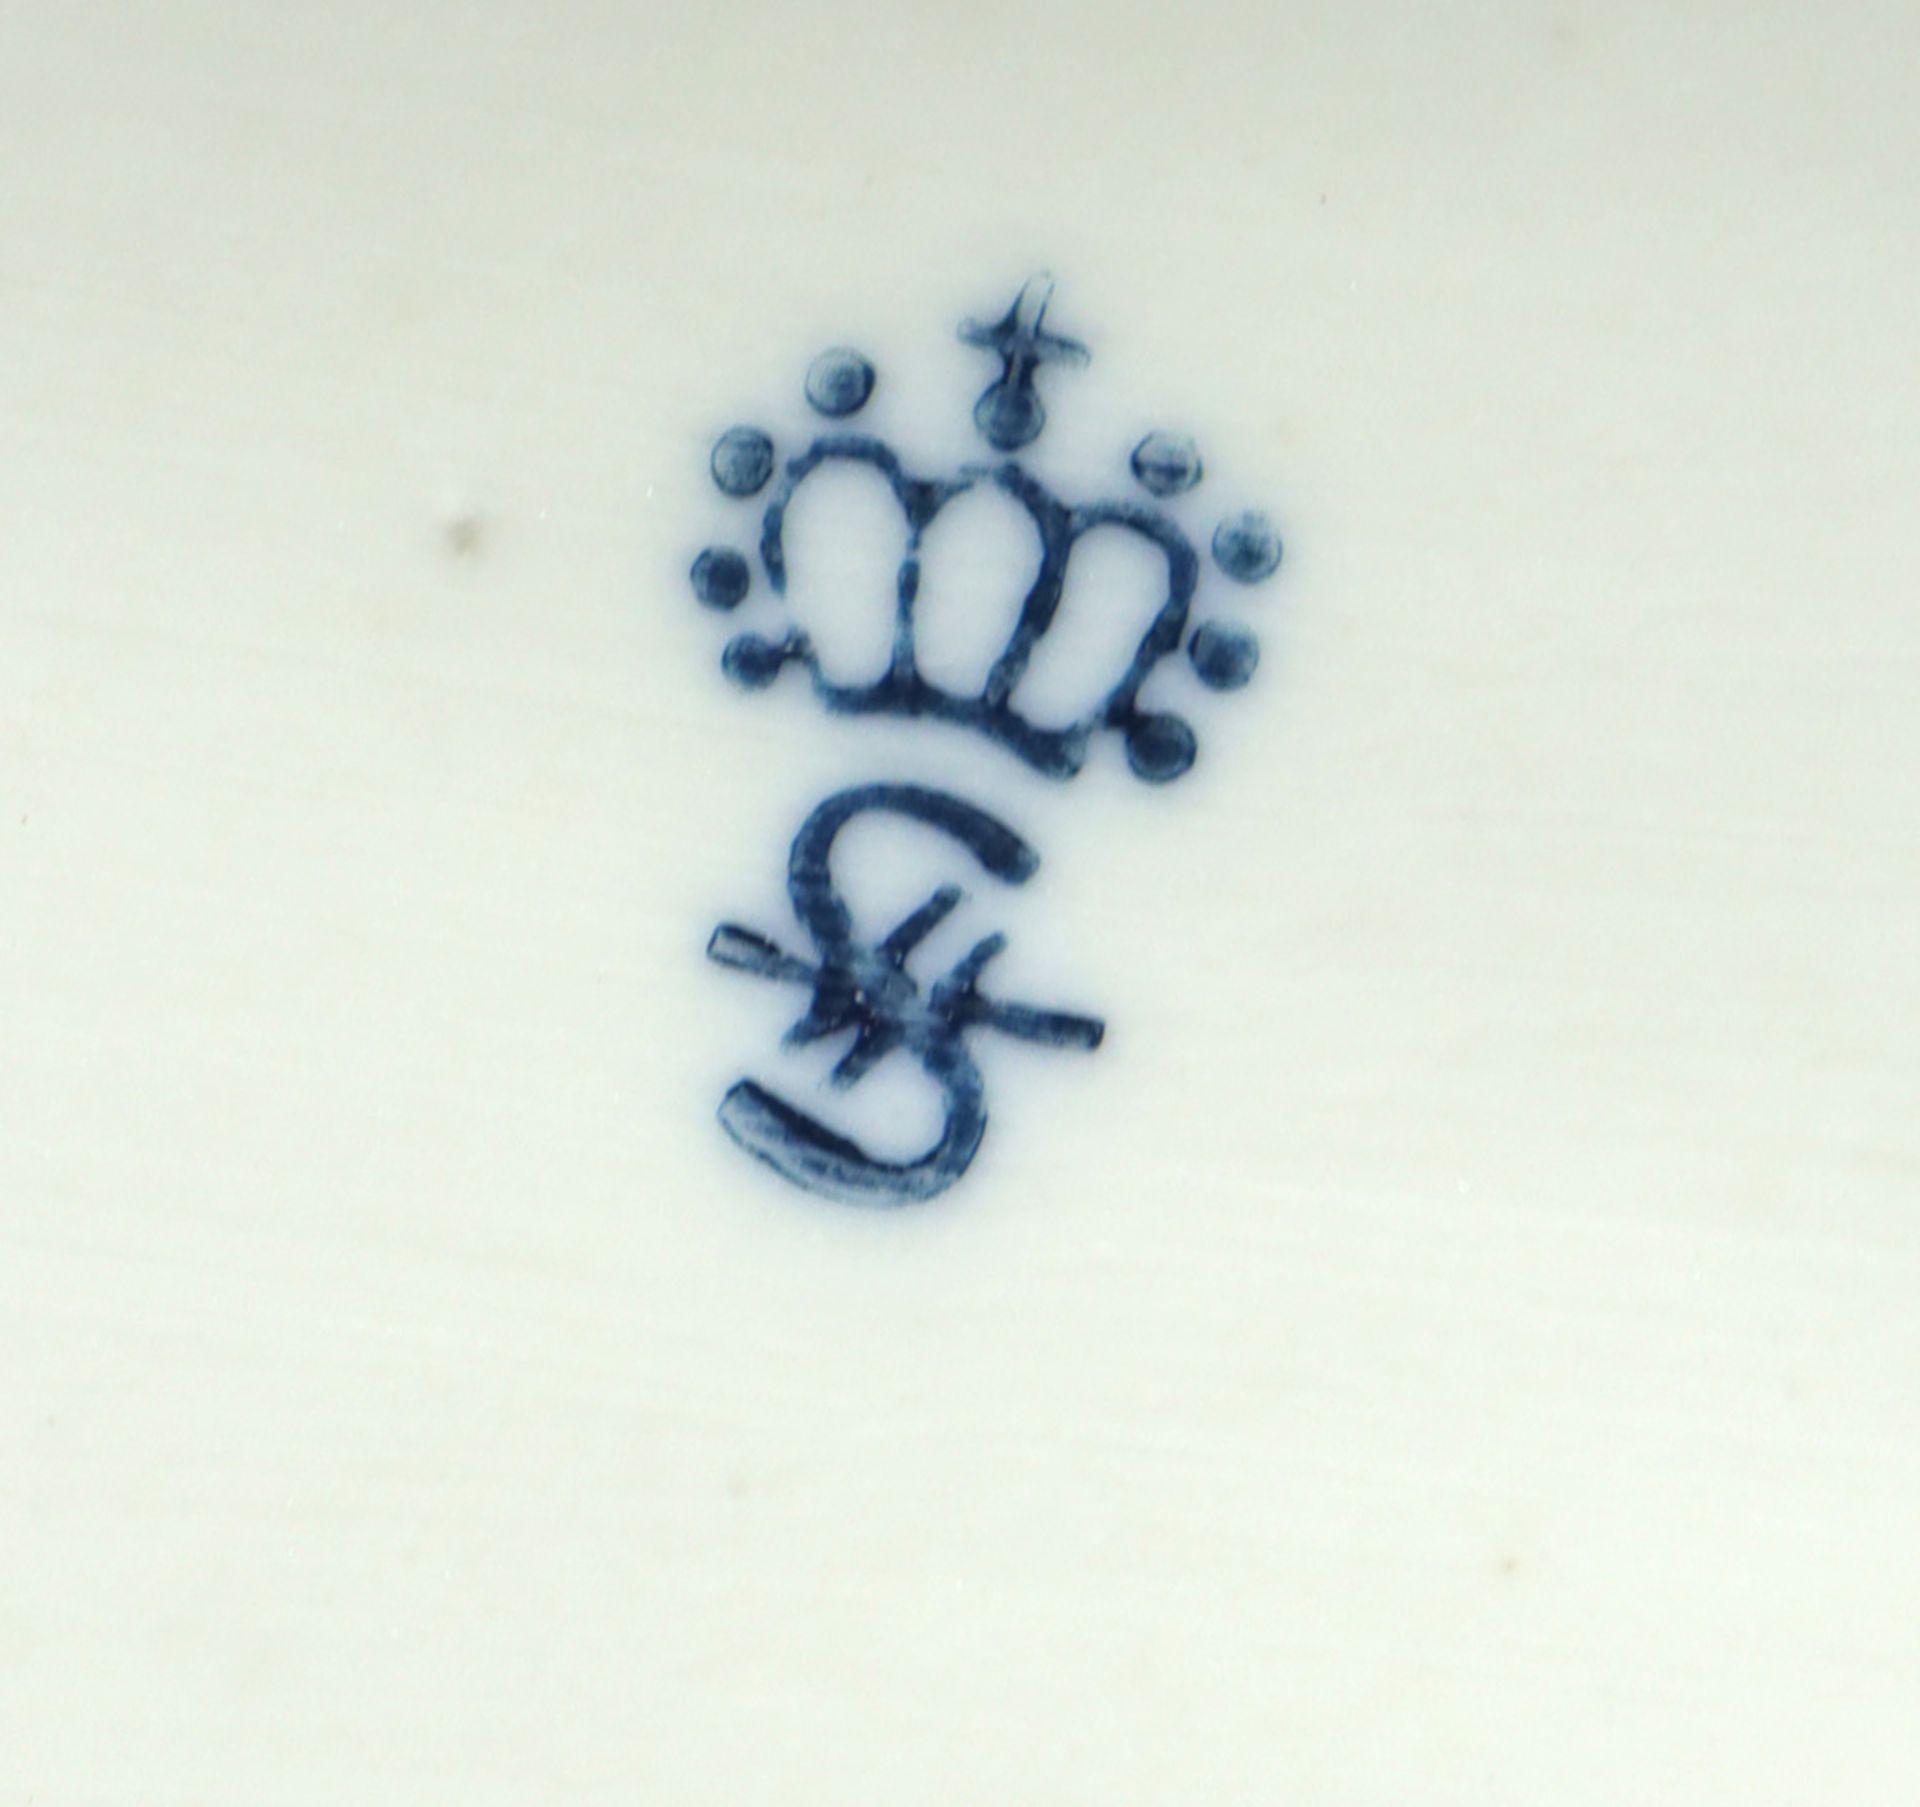 Schäferstündchenweiß glasiertes Porzellan mit unterglasurblauer Manufakturmarke Sitzendorfer - Image 3 of 3